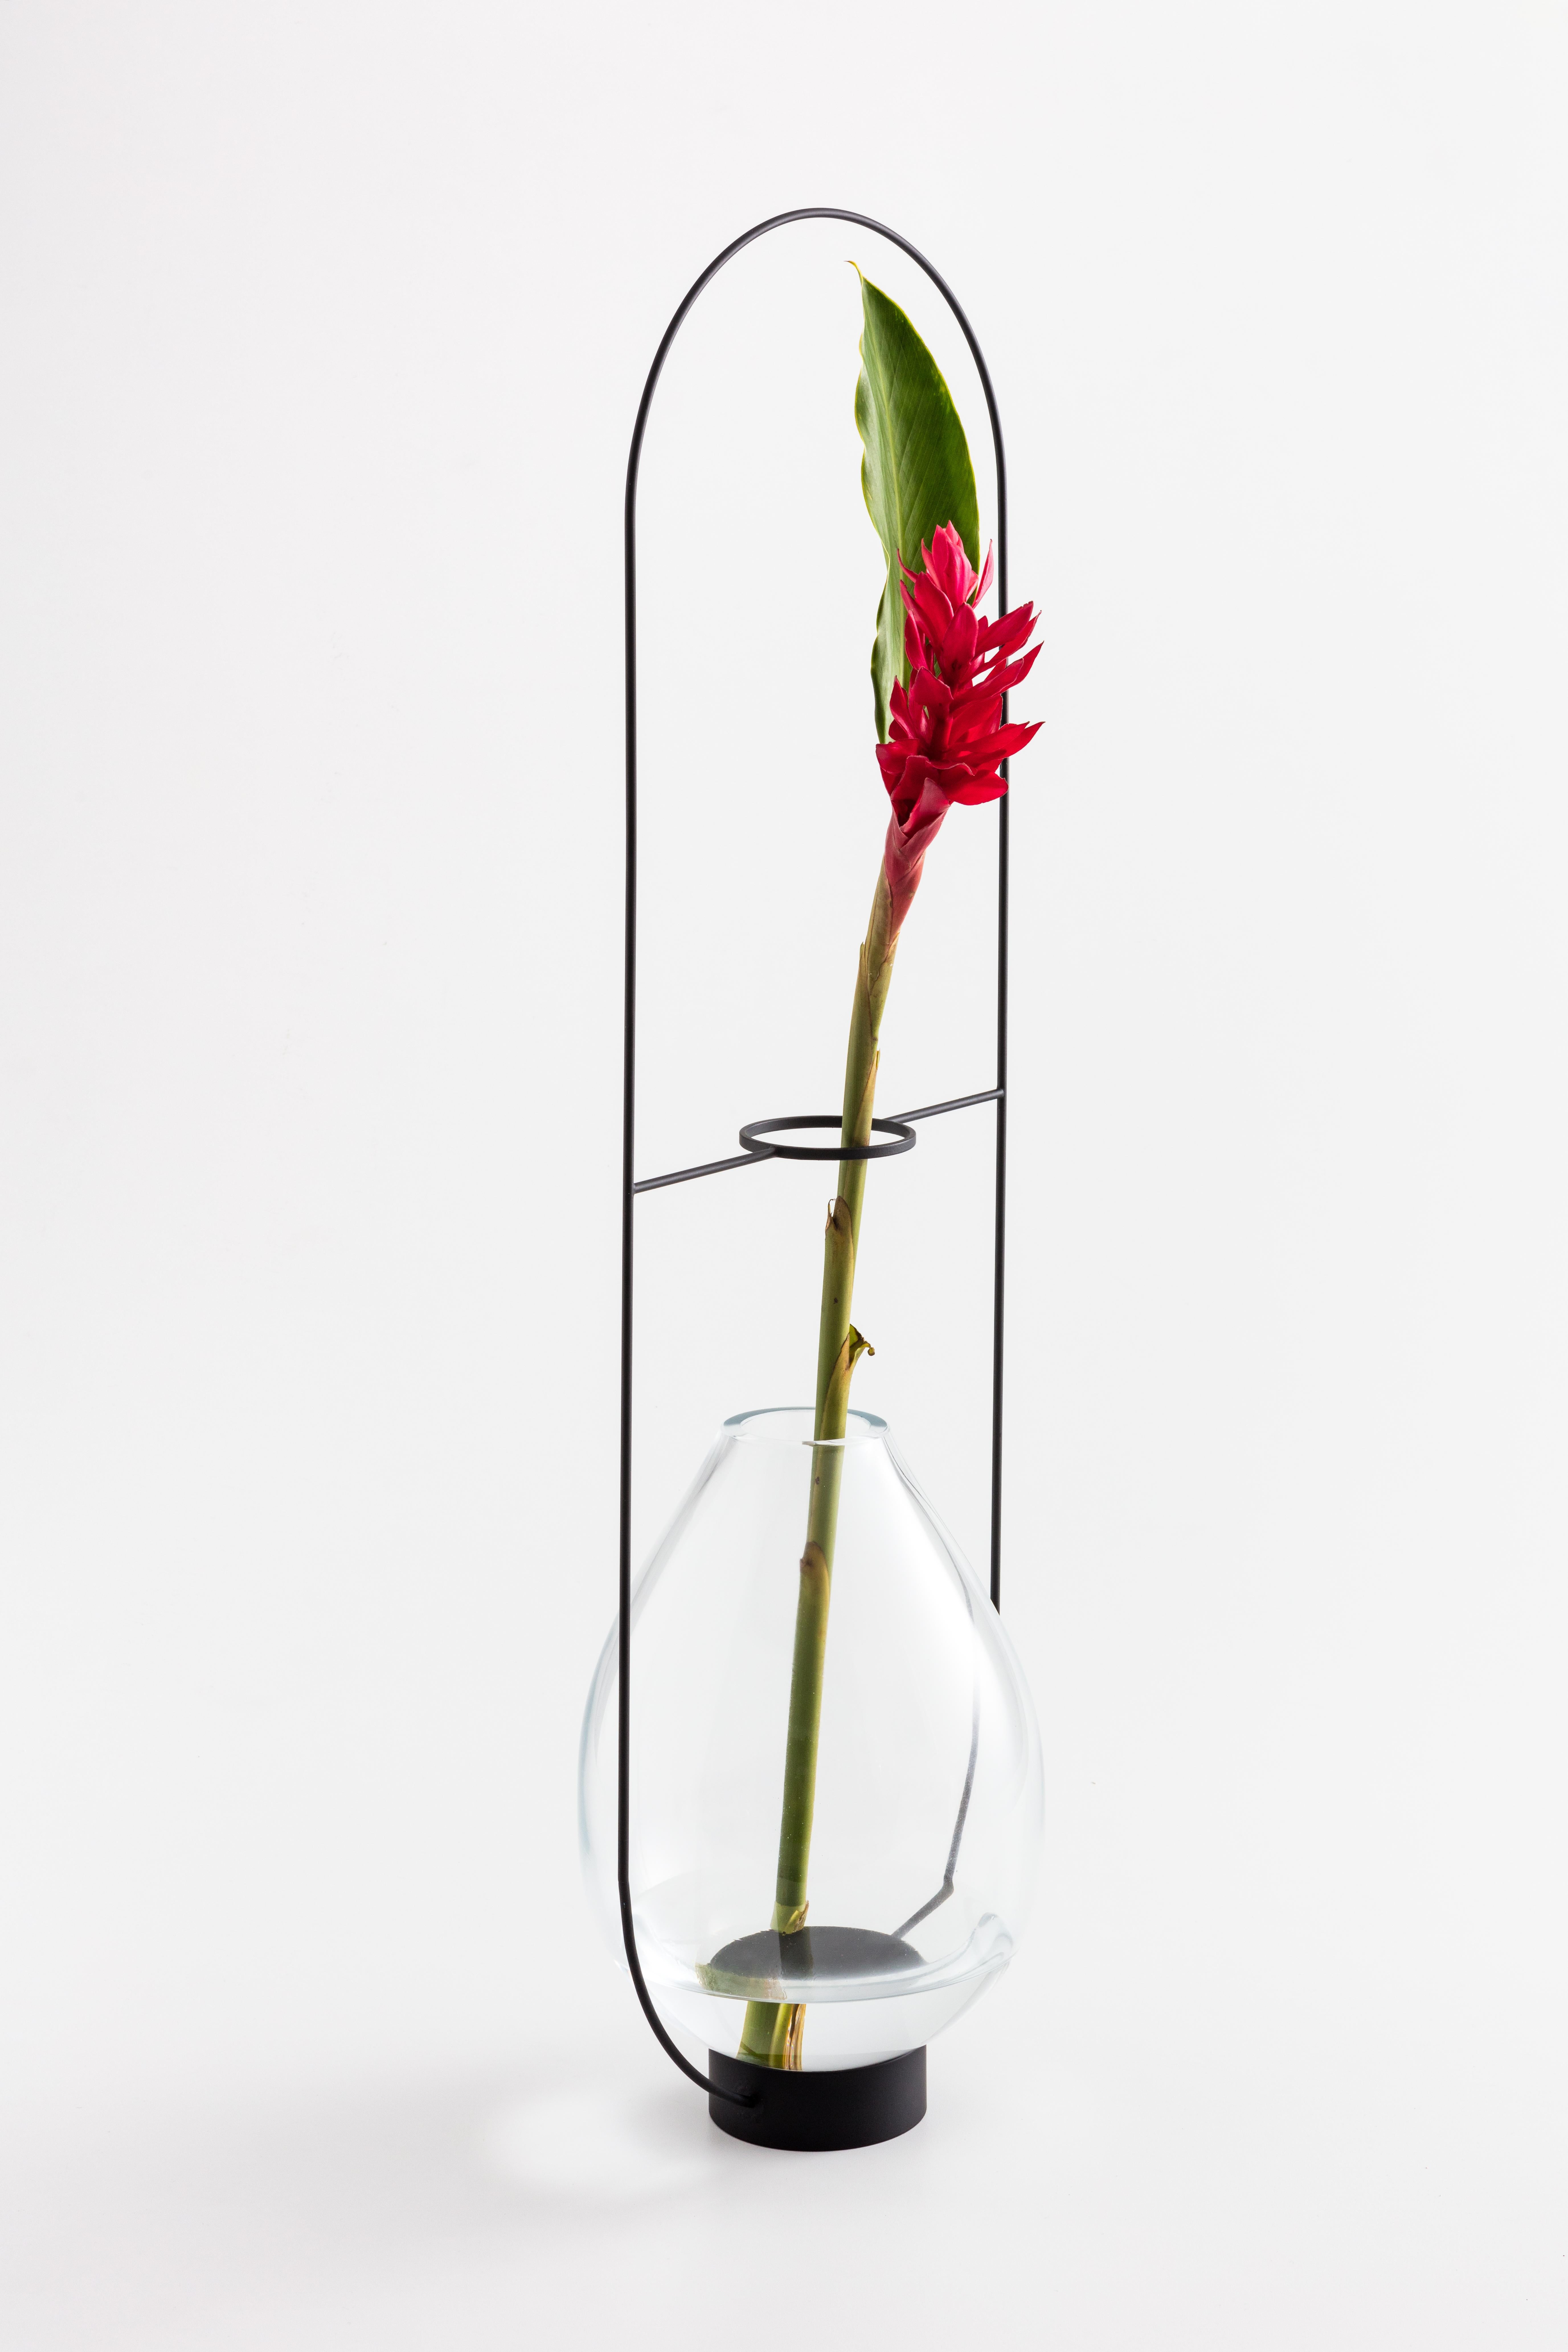 Die Vase ELO G von Paulo Goldstein, brasilianisches zeitgenössisches Design, mundgeblasenes Glas und Stahl, gehört zu einer Serie von Vasen, die durch die Beobachtung der natürlichen Linien der darin enthaltenen Blumen und Blätter inspiriert wurden.